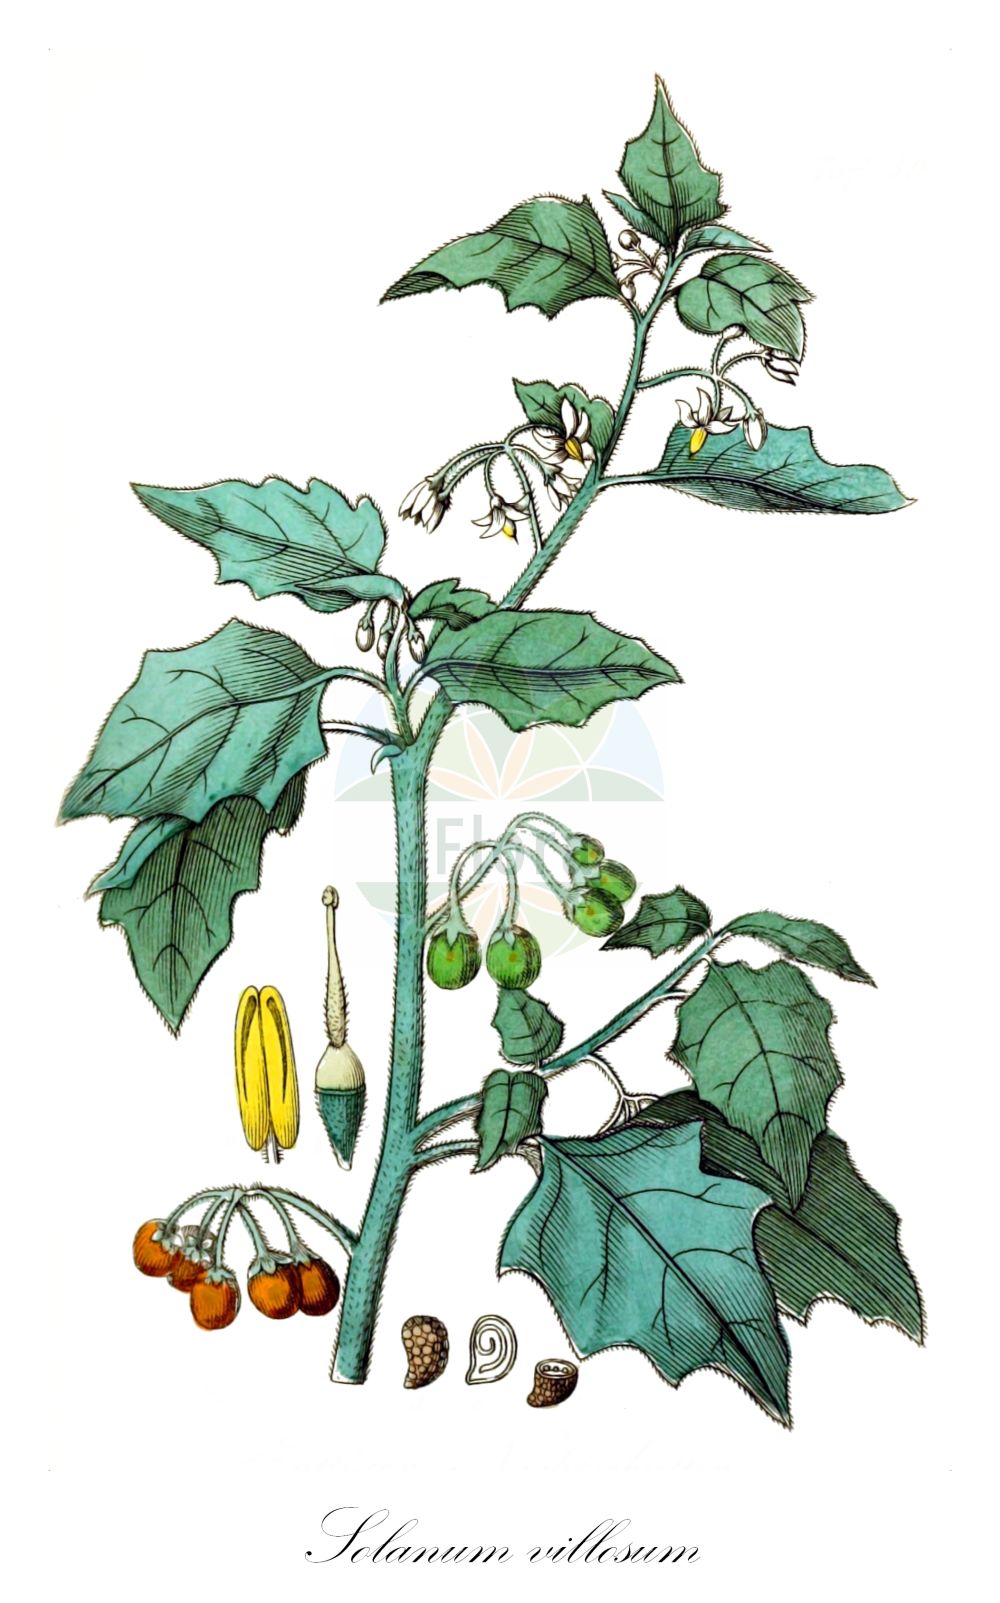 Historische Abbildung von Solanum villosum (Rotfrüchtiger Nachtschatten - Red Nightshade). Das Bild zeigt Blatt, Bluete, Frucht und Same. ---- Historical Drawing of Solanum villosum (Rotfrüchtiger Nachtschatten - Red Nightshade). The image is showing leaf, flower, fruit and seed.(Solanum villosum,Rotfrüchtiger Nachtschatten,Red Nightshade,Solanum luteum,Solanum villosum,Rotfruechtiger Nachtschatten,Red Nightshade,Hairy Nightshade,Red-berried Nightshade,Solanum,Nachtschatten,Bindweed,Solanaceae,Nachtschattengewächse,Potato family,Blatt,Bluete,Frucht,Same,leaf,flower,fruit,seed,Winkler (1853))